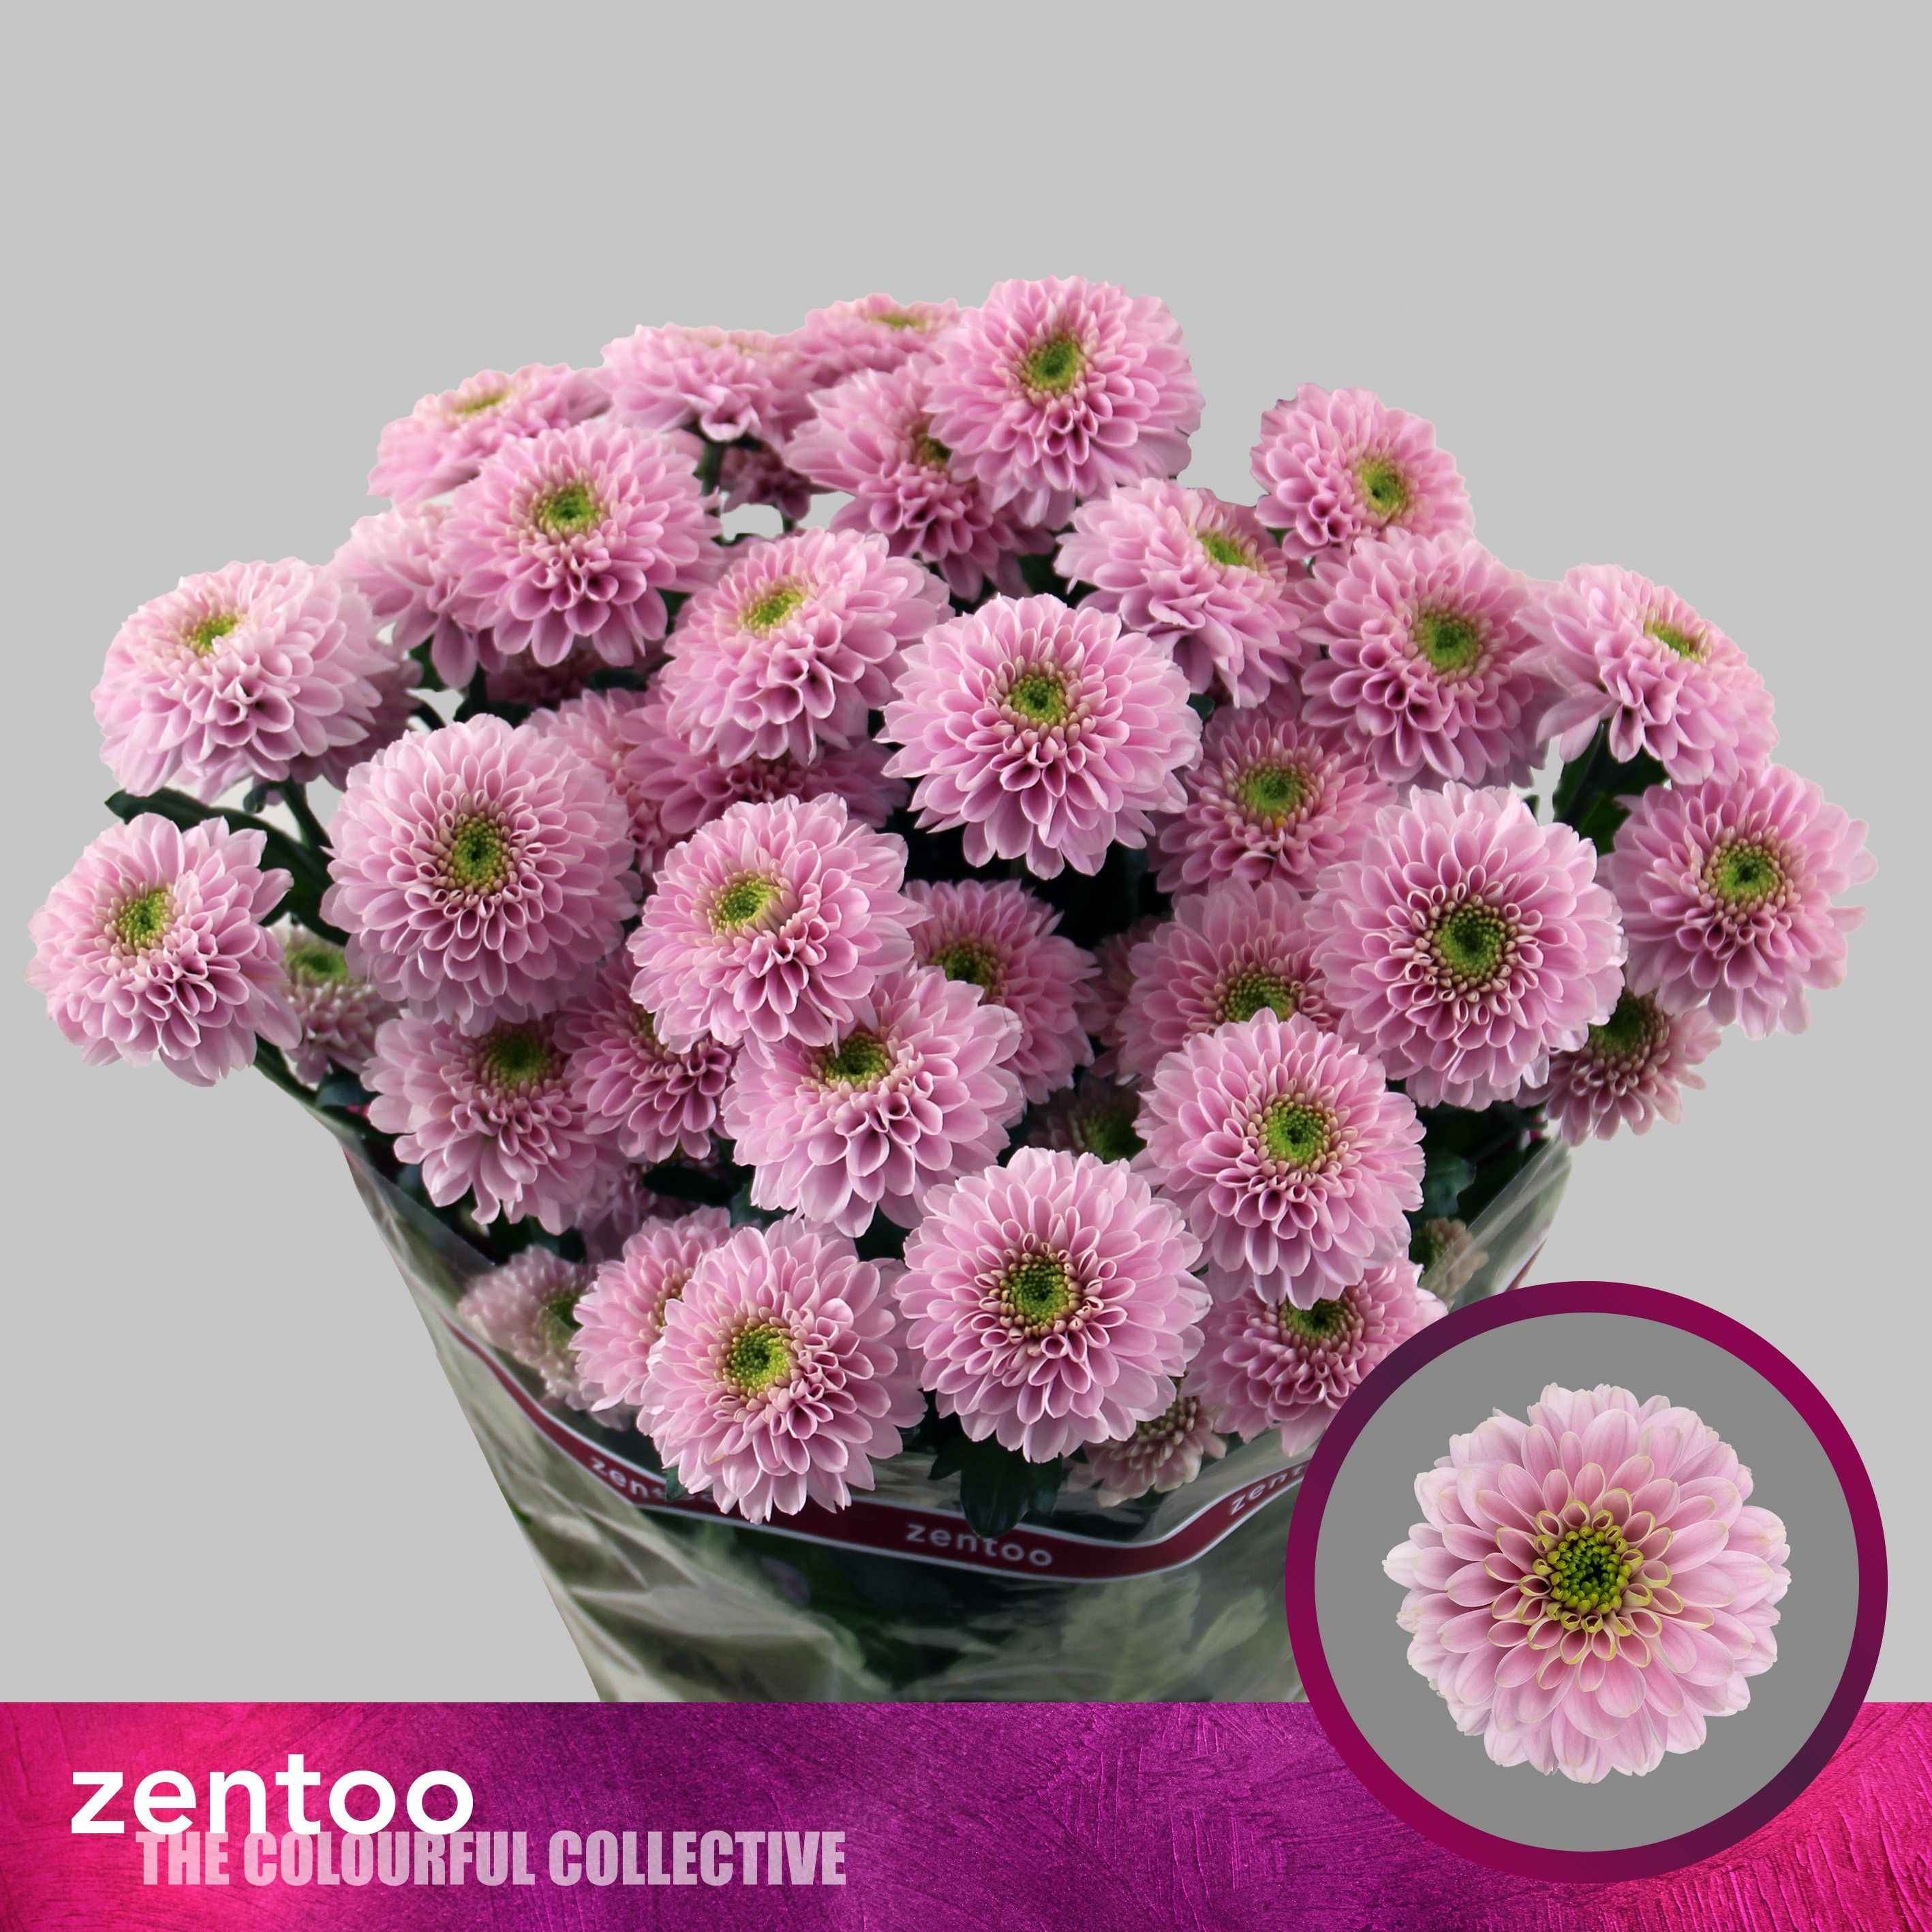 Срезанные цветы оптом Chrys sp letsgo pink от 20шт из Голландии с доставкой по России